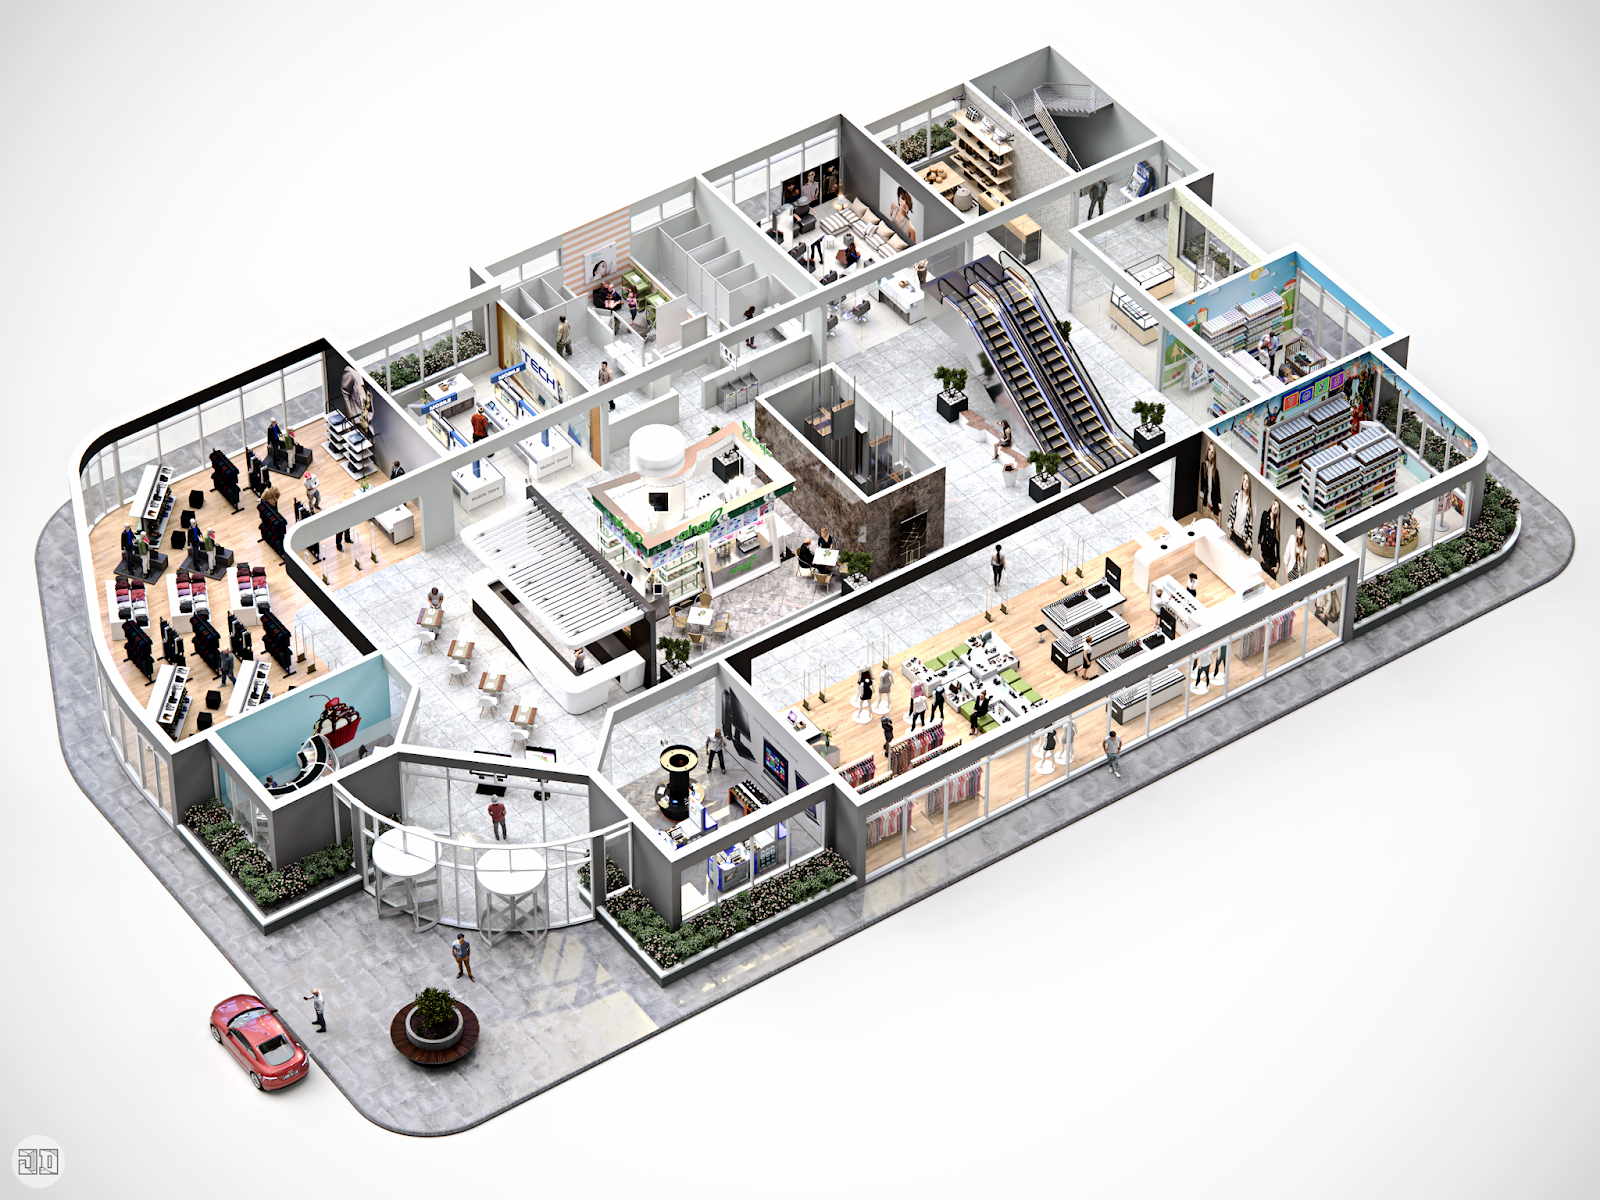 School project shopping. Макет торгового центра. Интерактивный план здания. Трехмерная модель помещения. План магазина 3д.